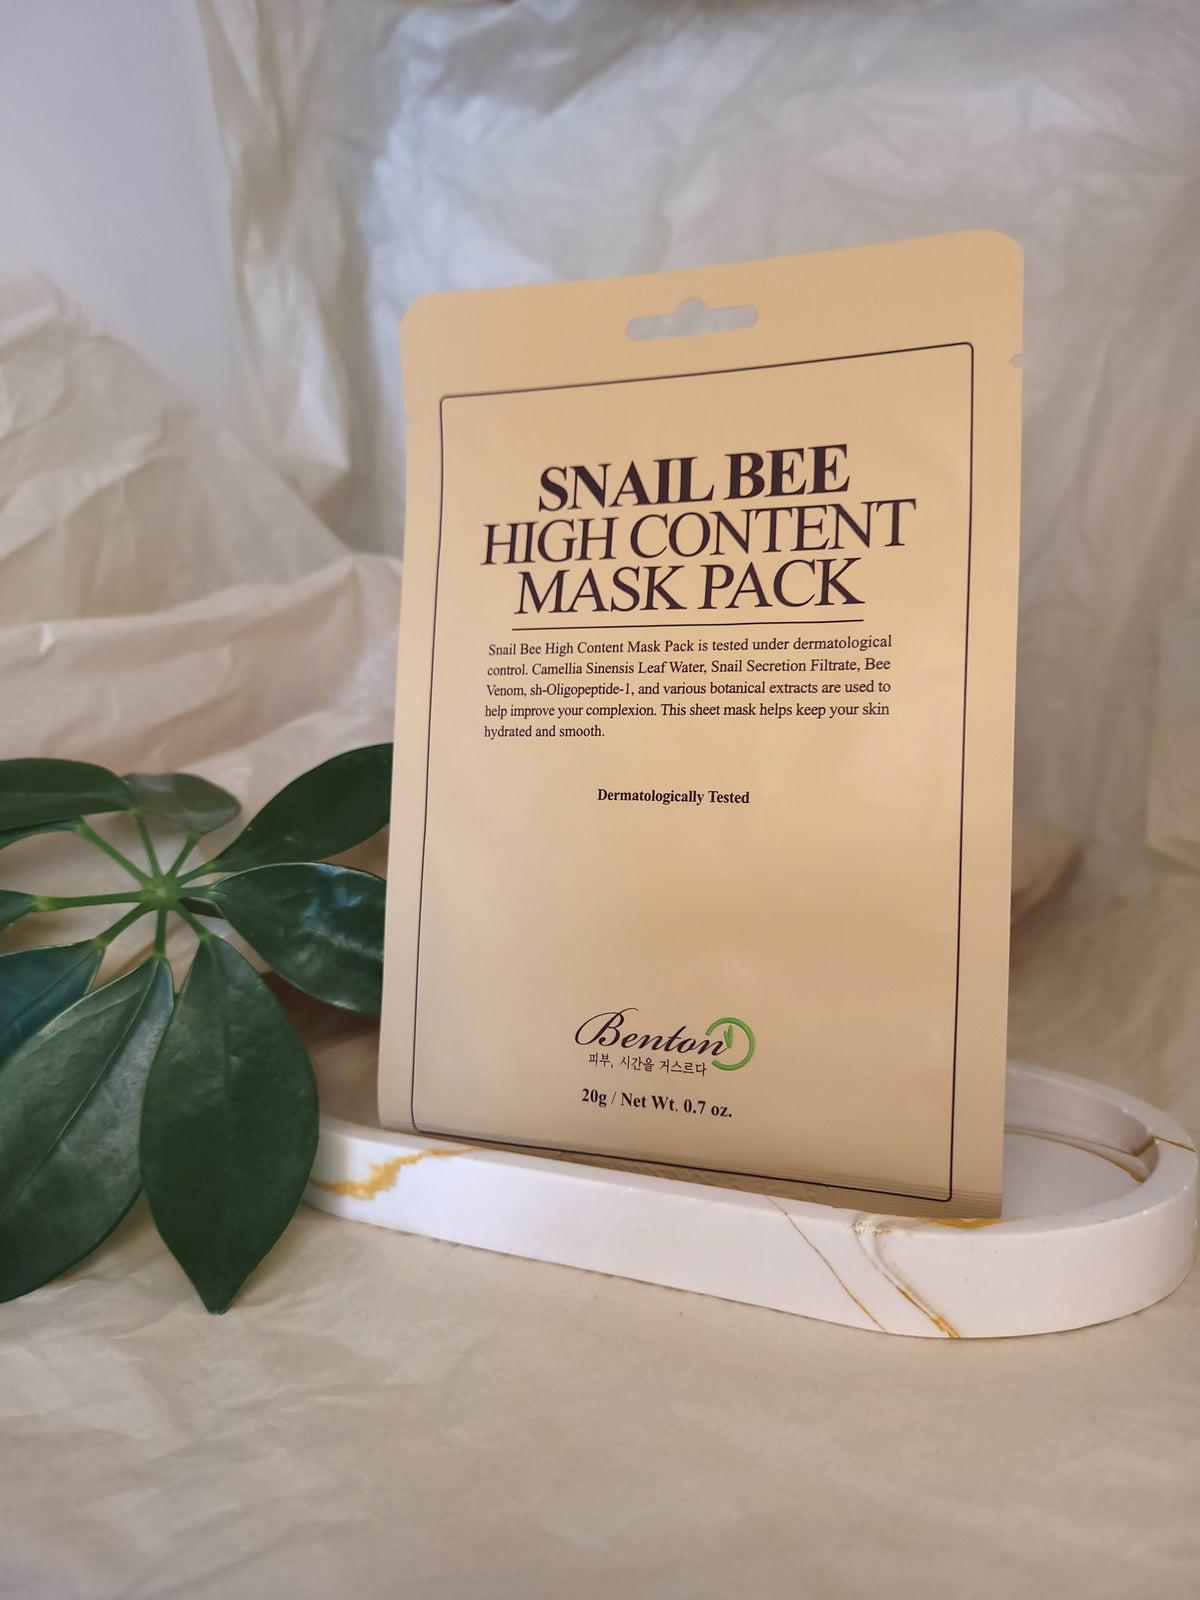 Snail Bee High Content Mask fremstilles af BENSON og forhandles af Glass Skin